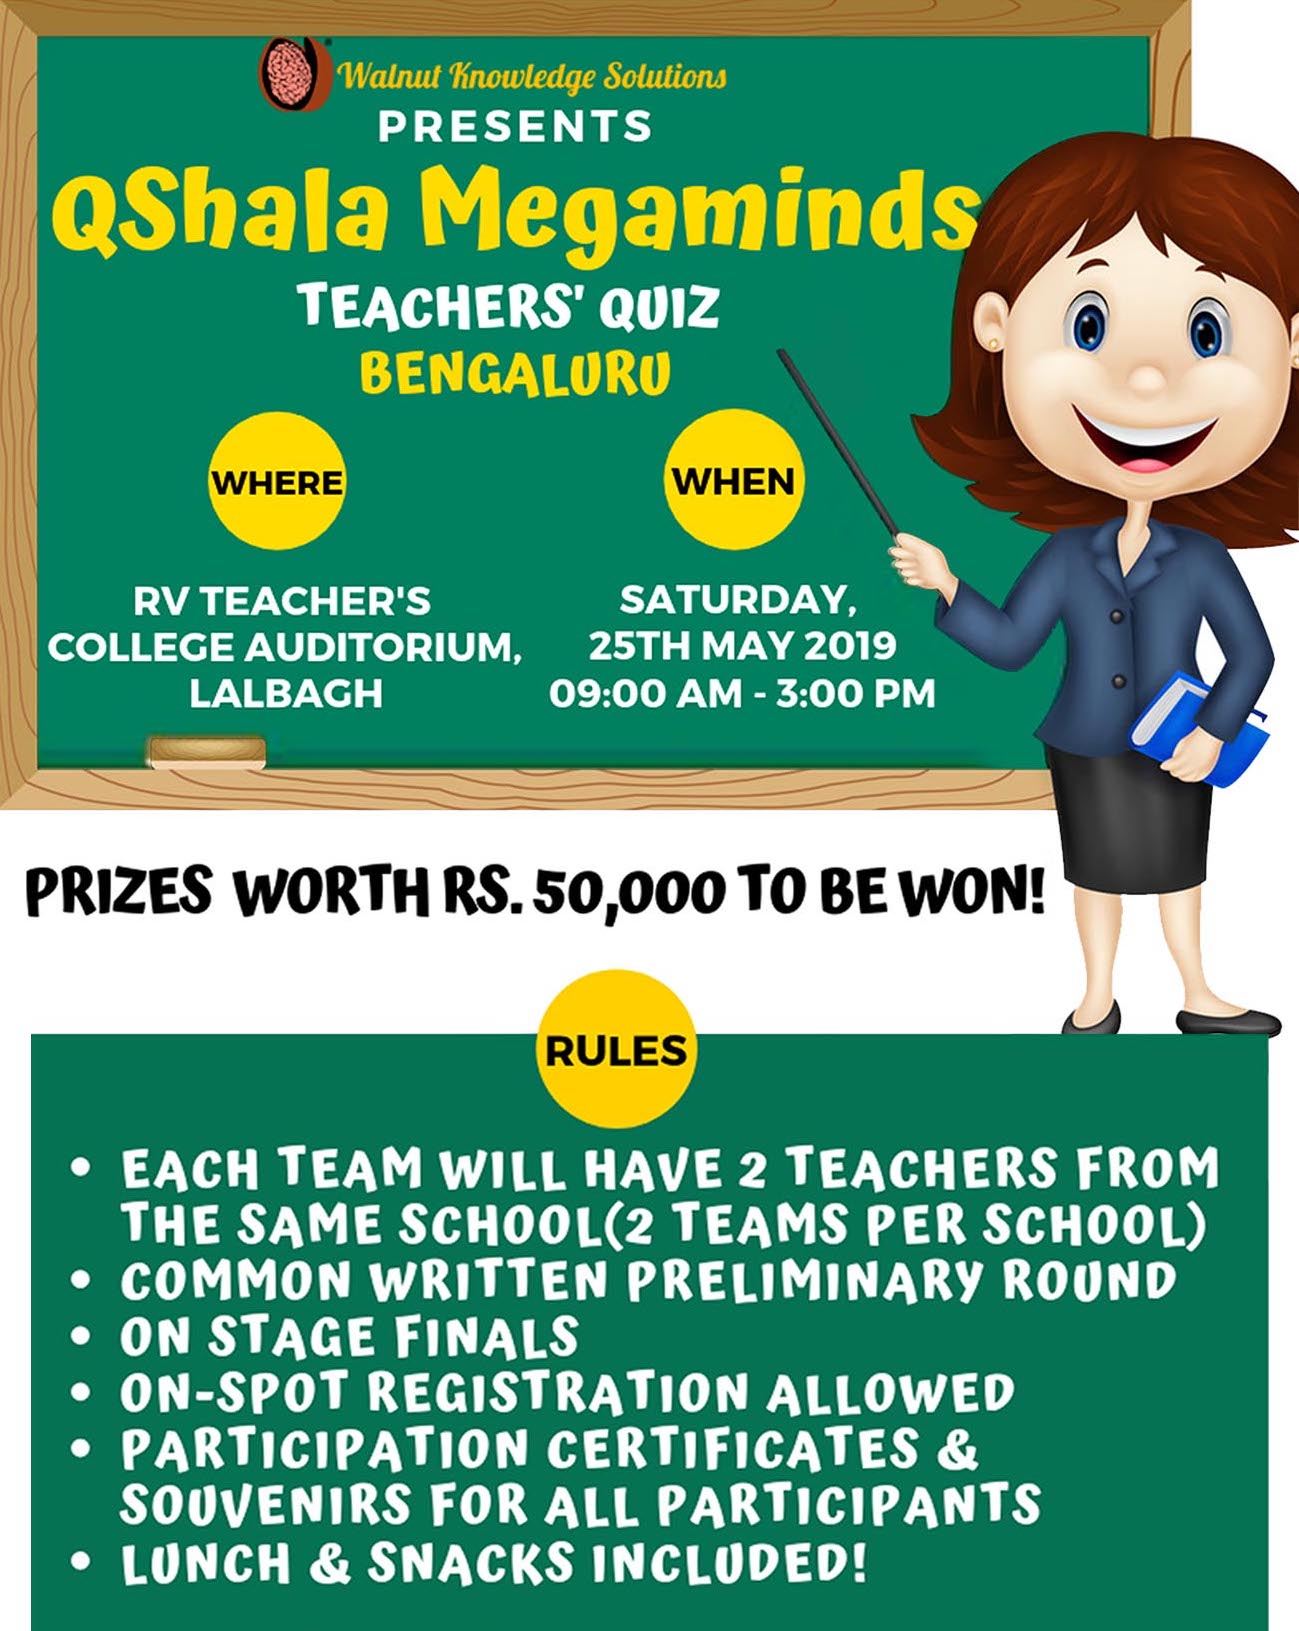 QShala Megaminds - The Largest Teachers' Quiz in Bengaluru!, Bangalore, Karnataka, India